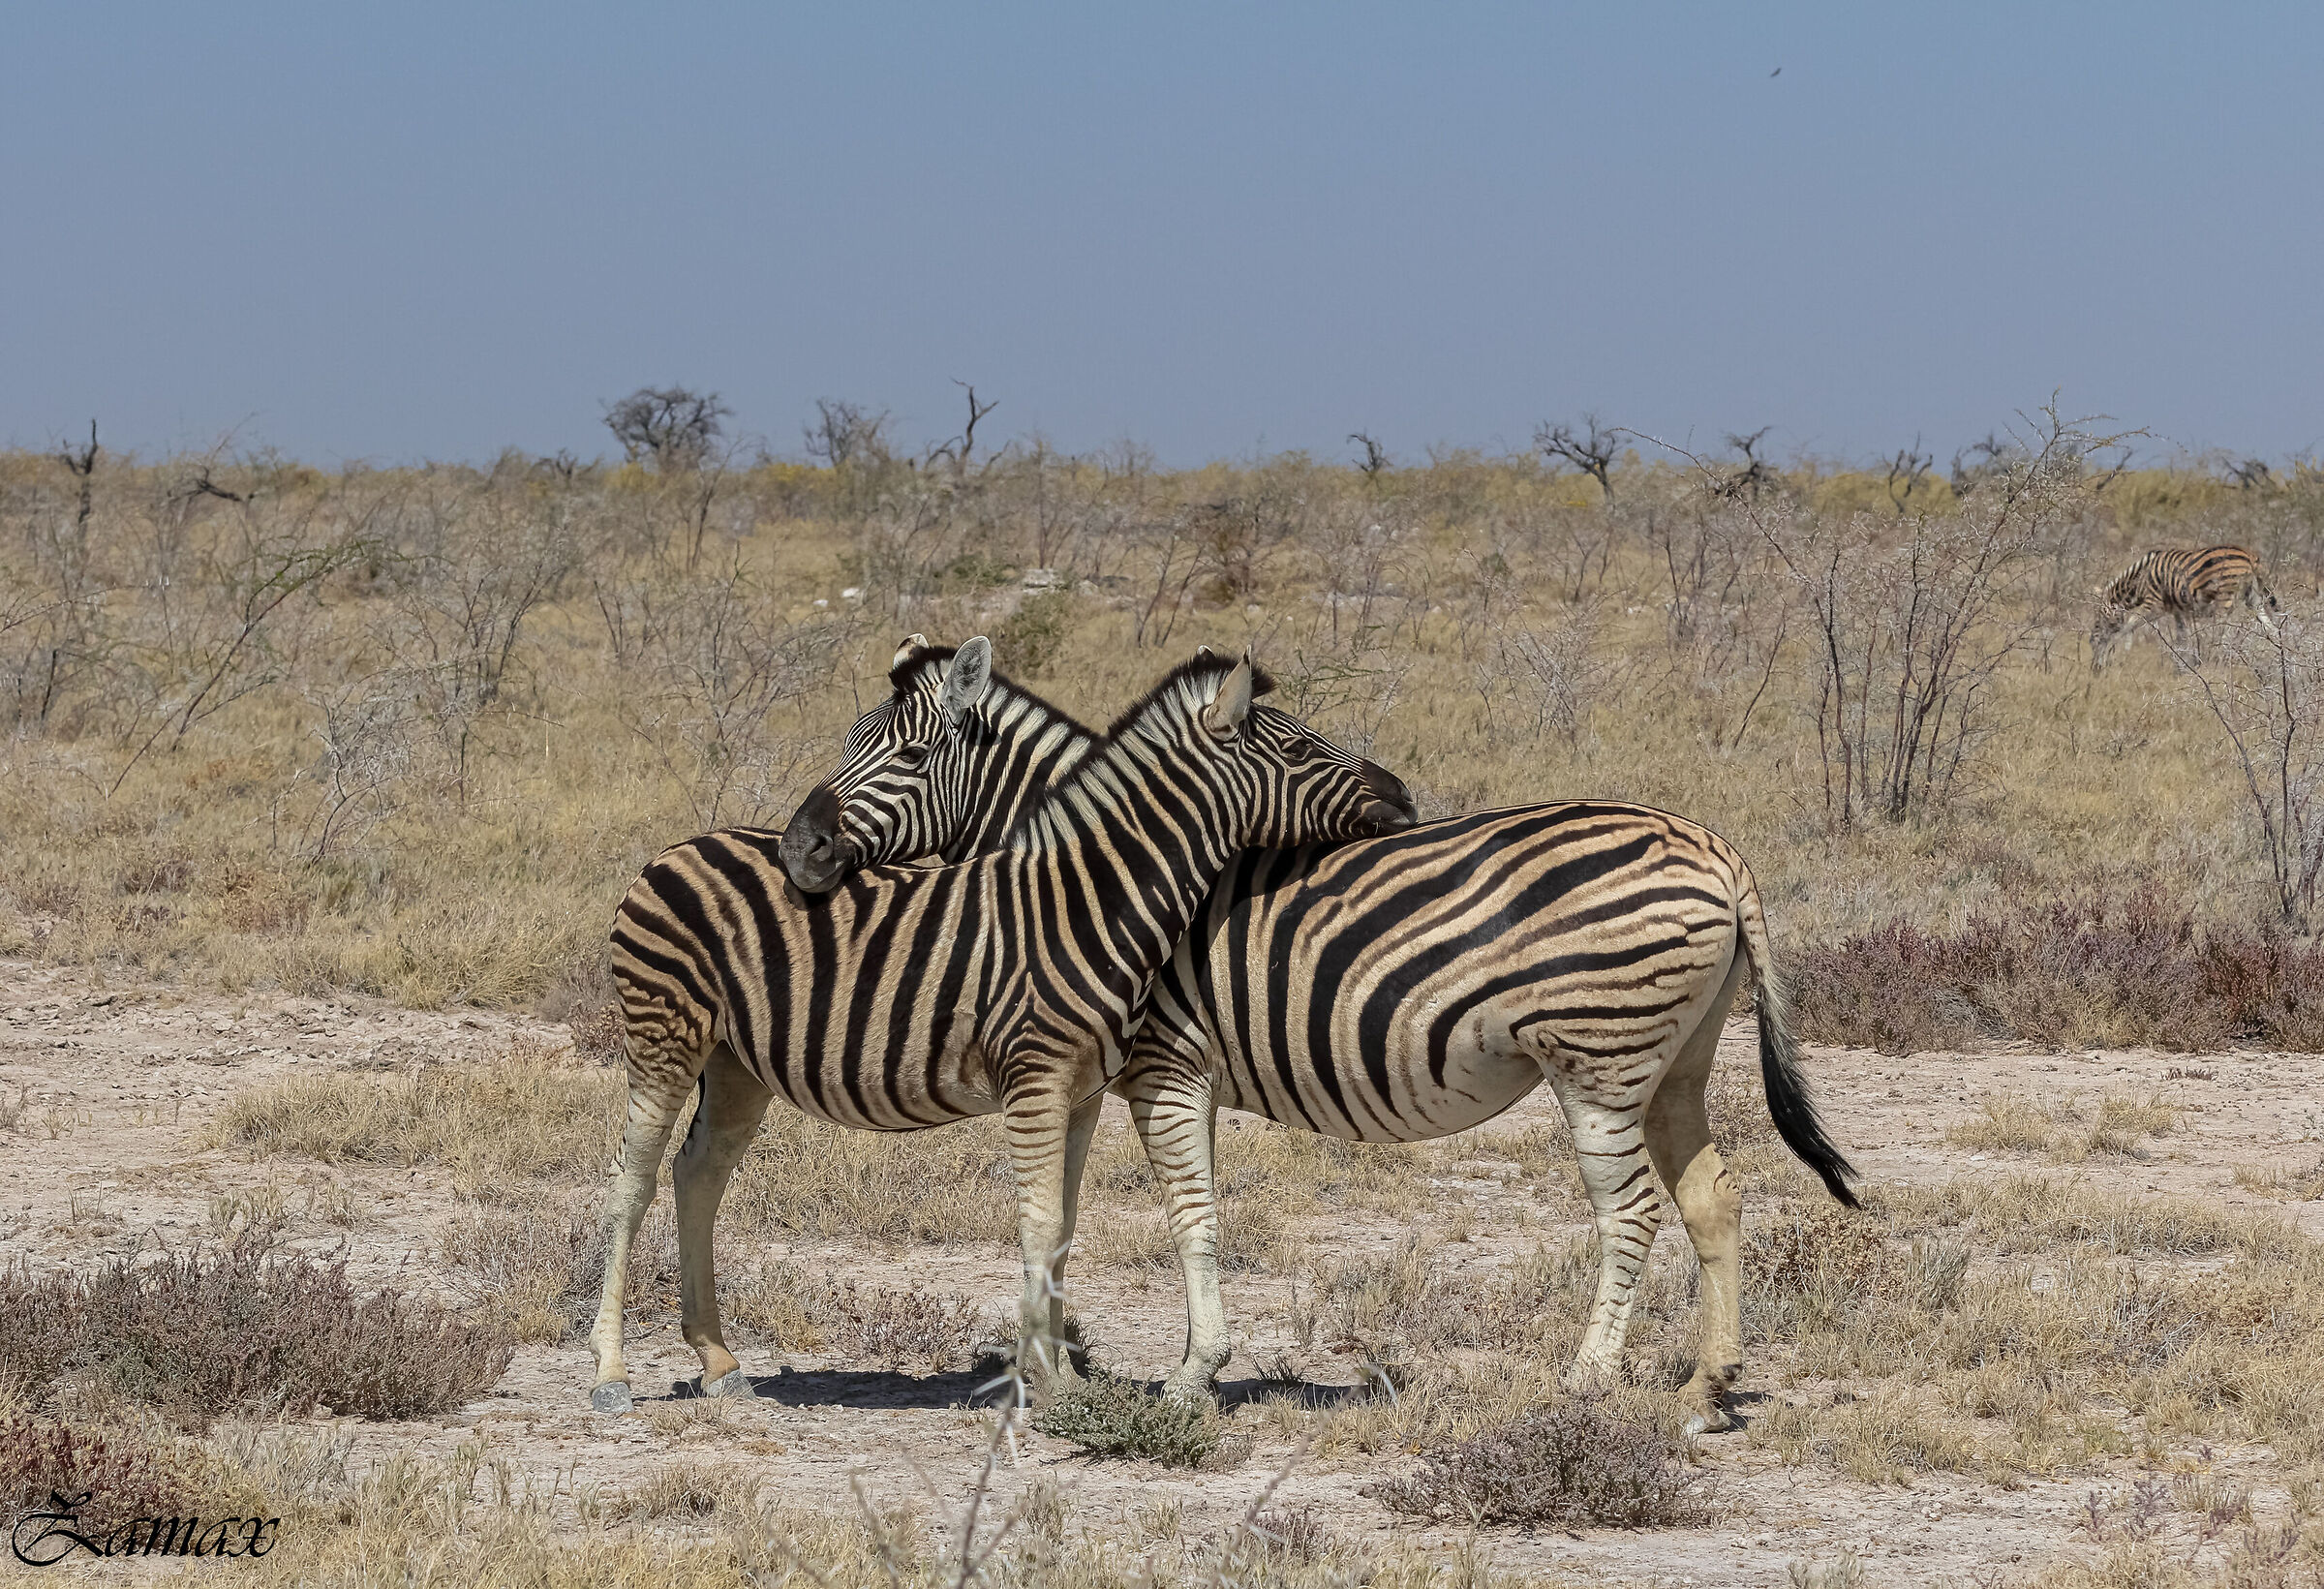 Zebras at rest...